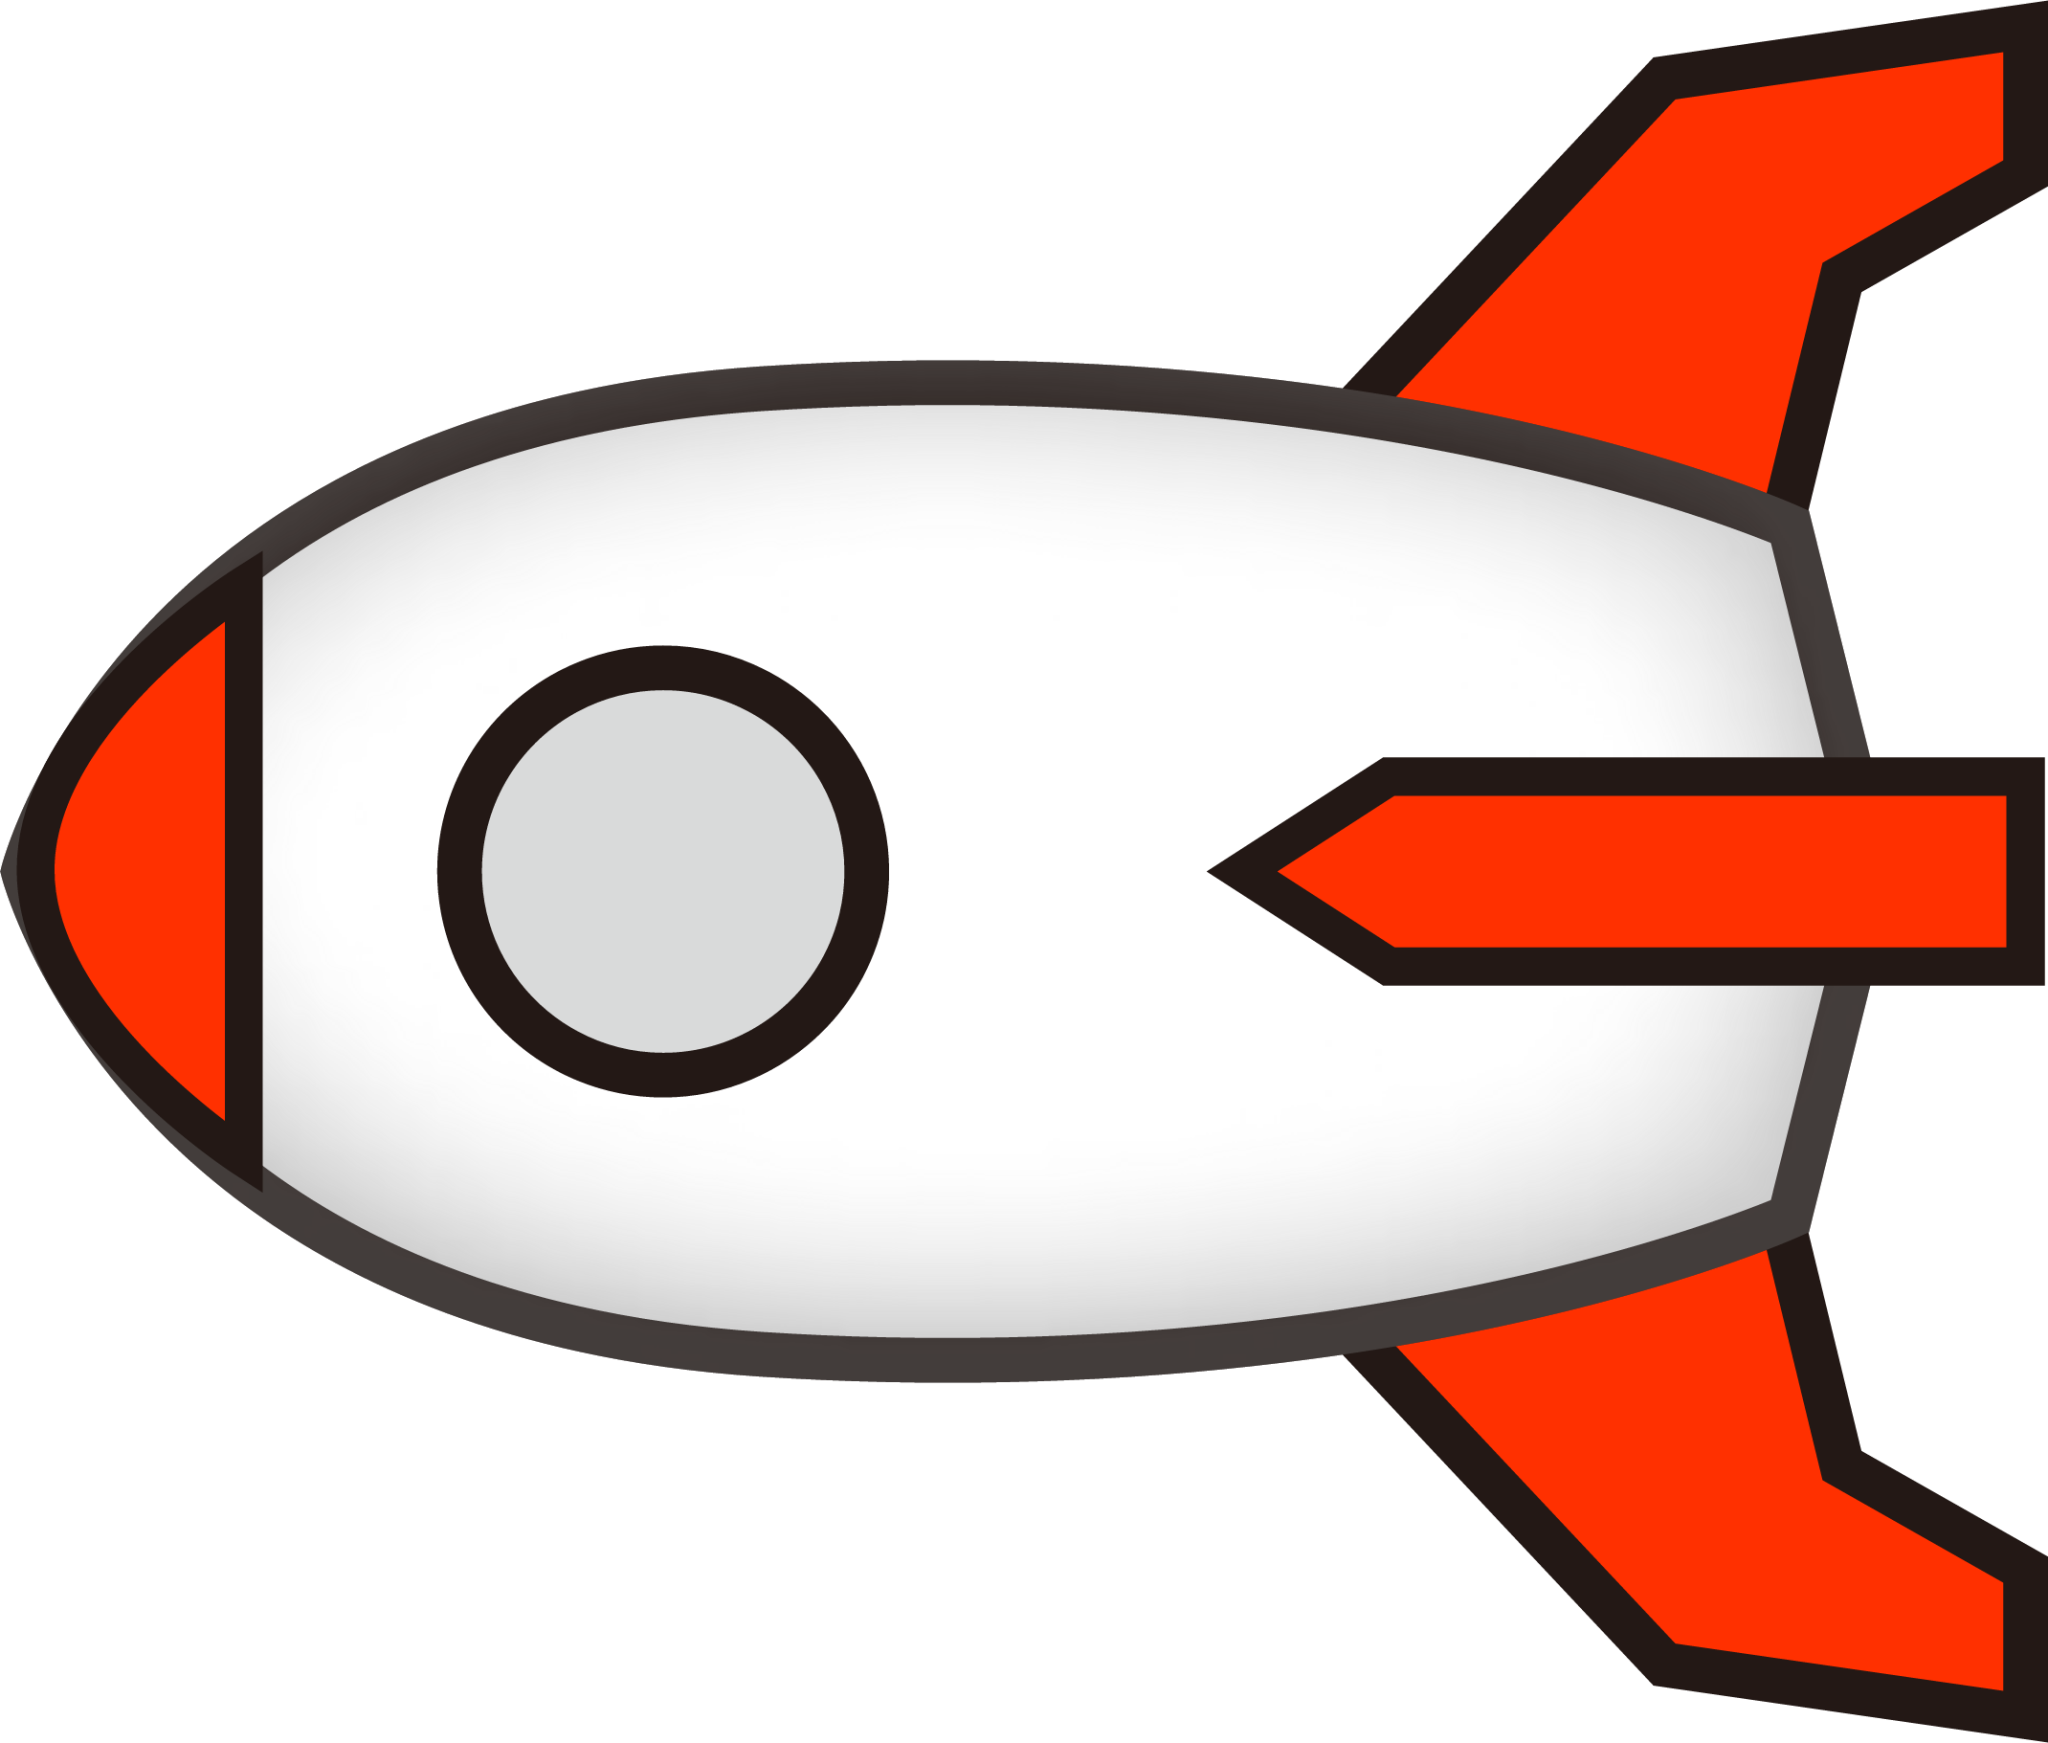 leftwards rocket (simple) emoji